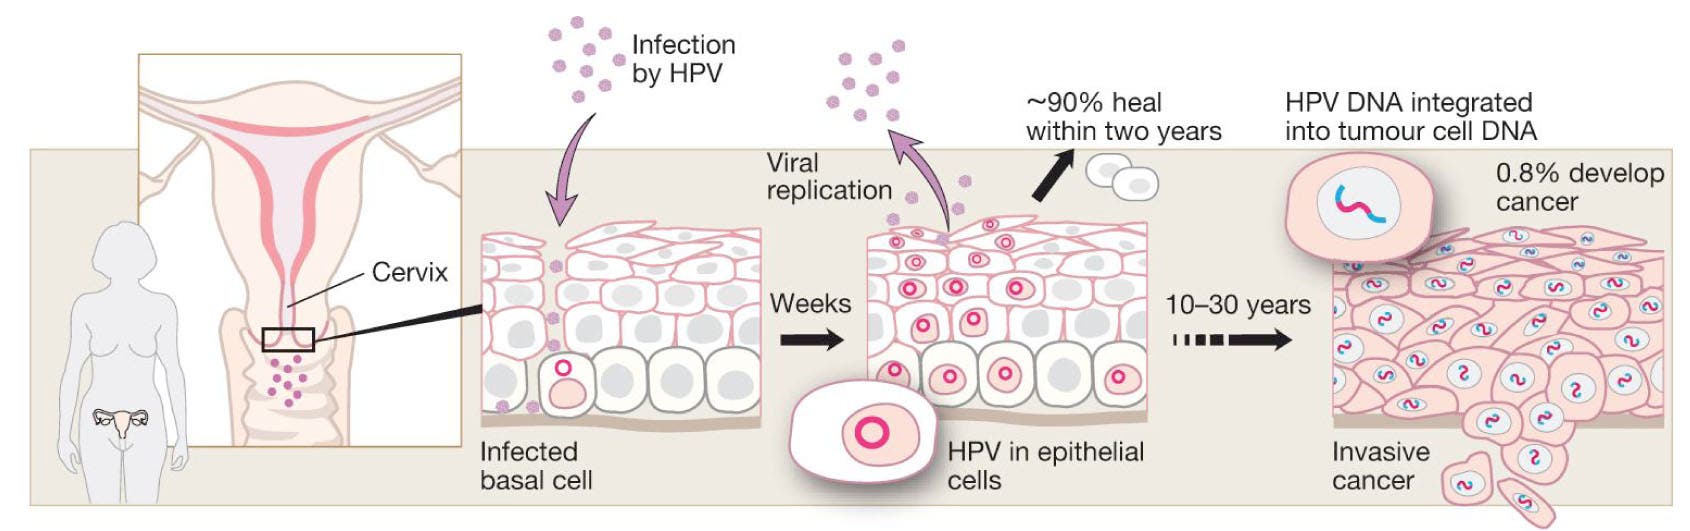 HPV-Infektion